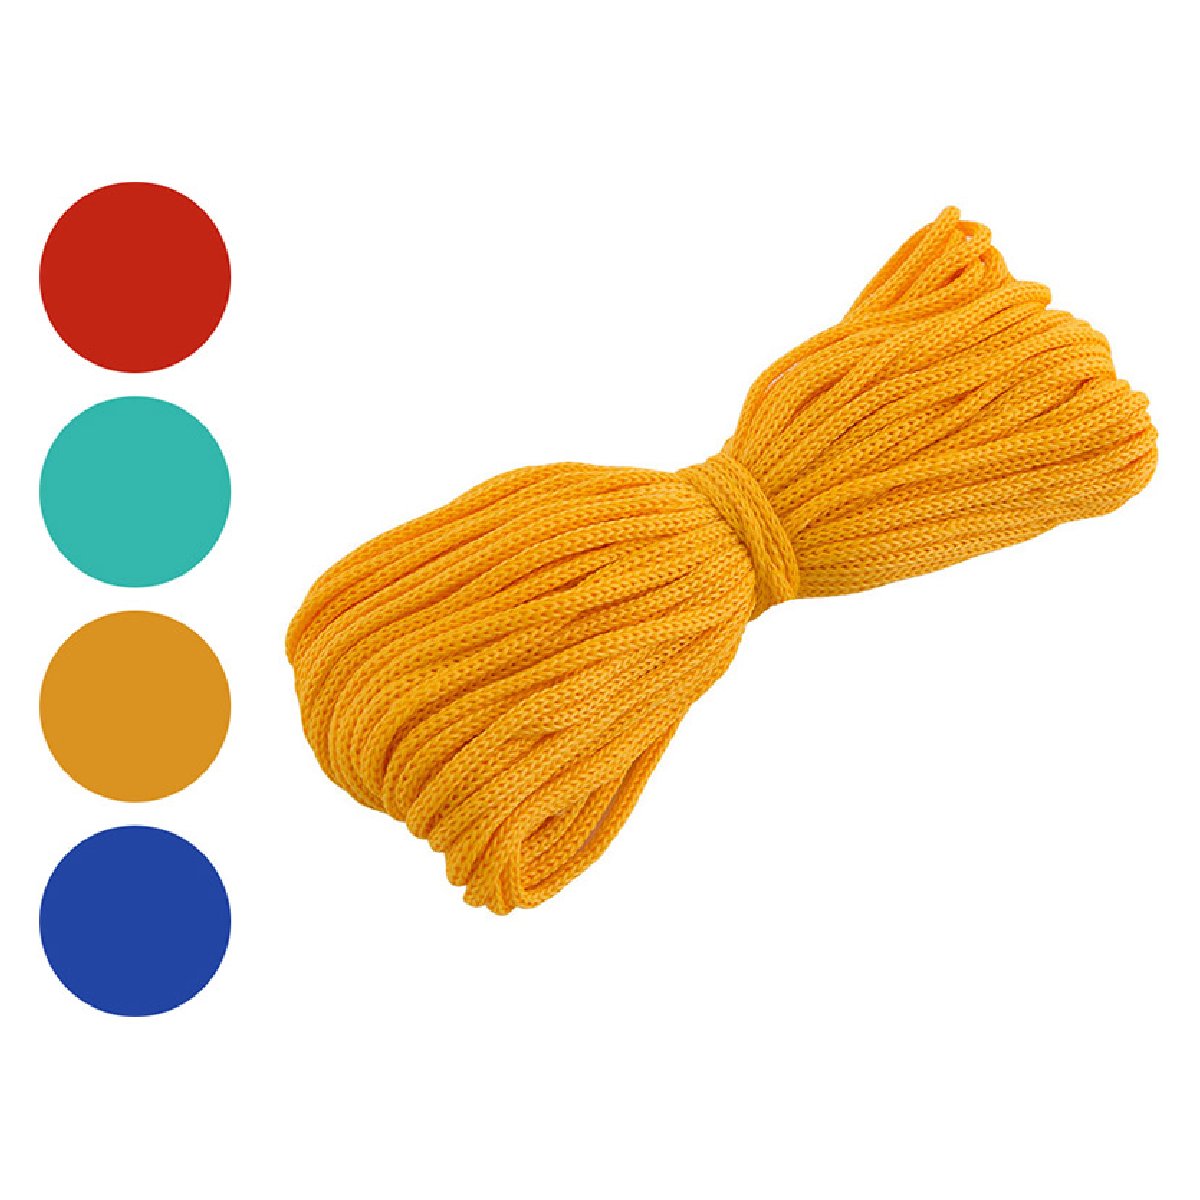 Шнур вязанный хозяйственный цветной д. 3 мм (20 метров) (082289)Купить